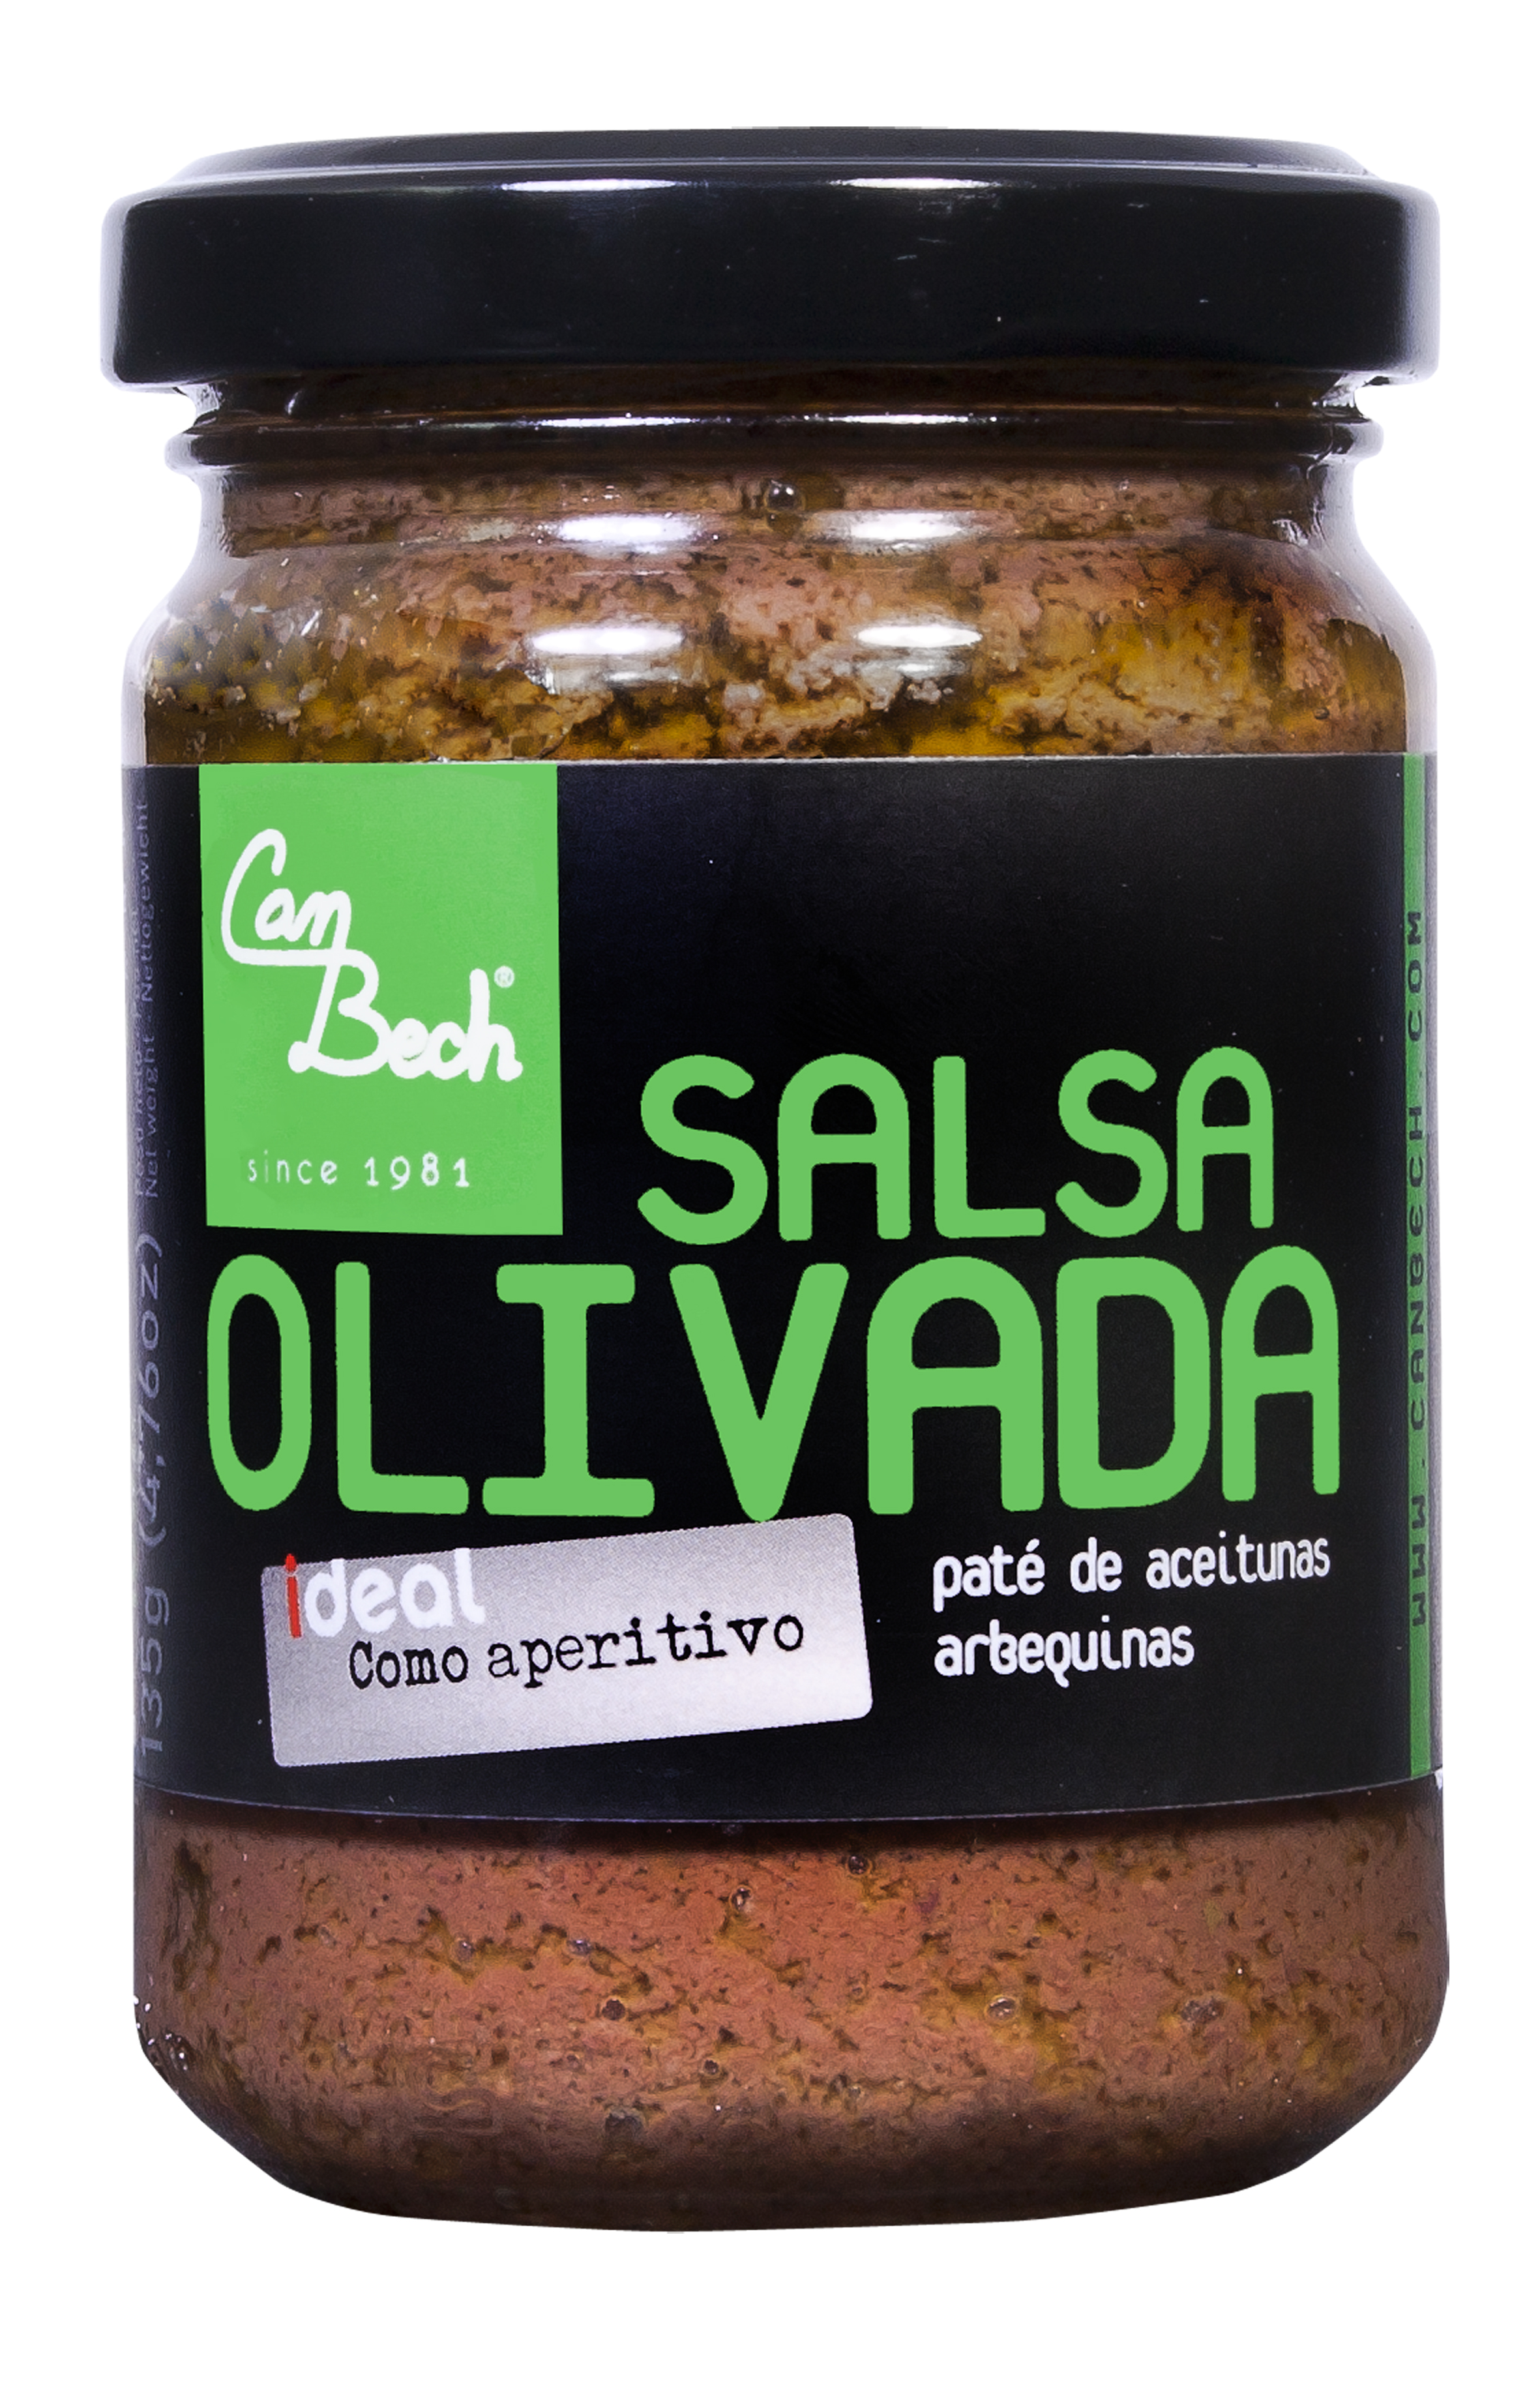 Salsa Olivada - grüne Olivenpaste aus Arbequina-Oliven